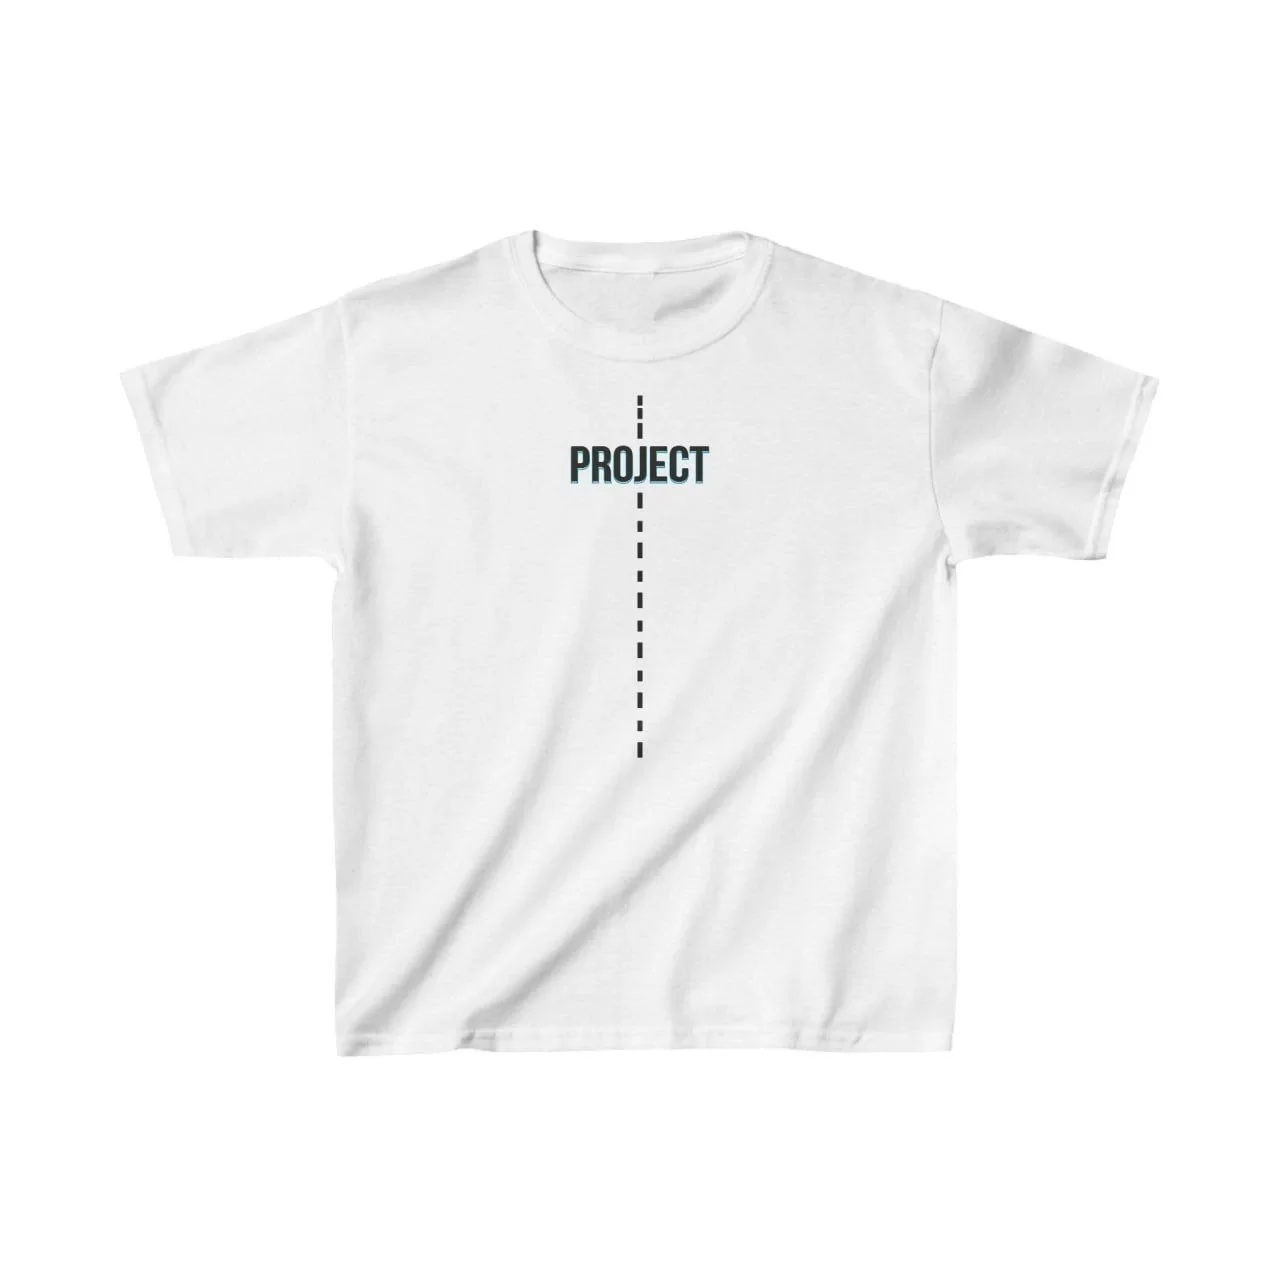 Çocuk Unisex Baskılı T-Shirt - Beyaz